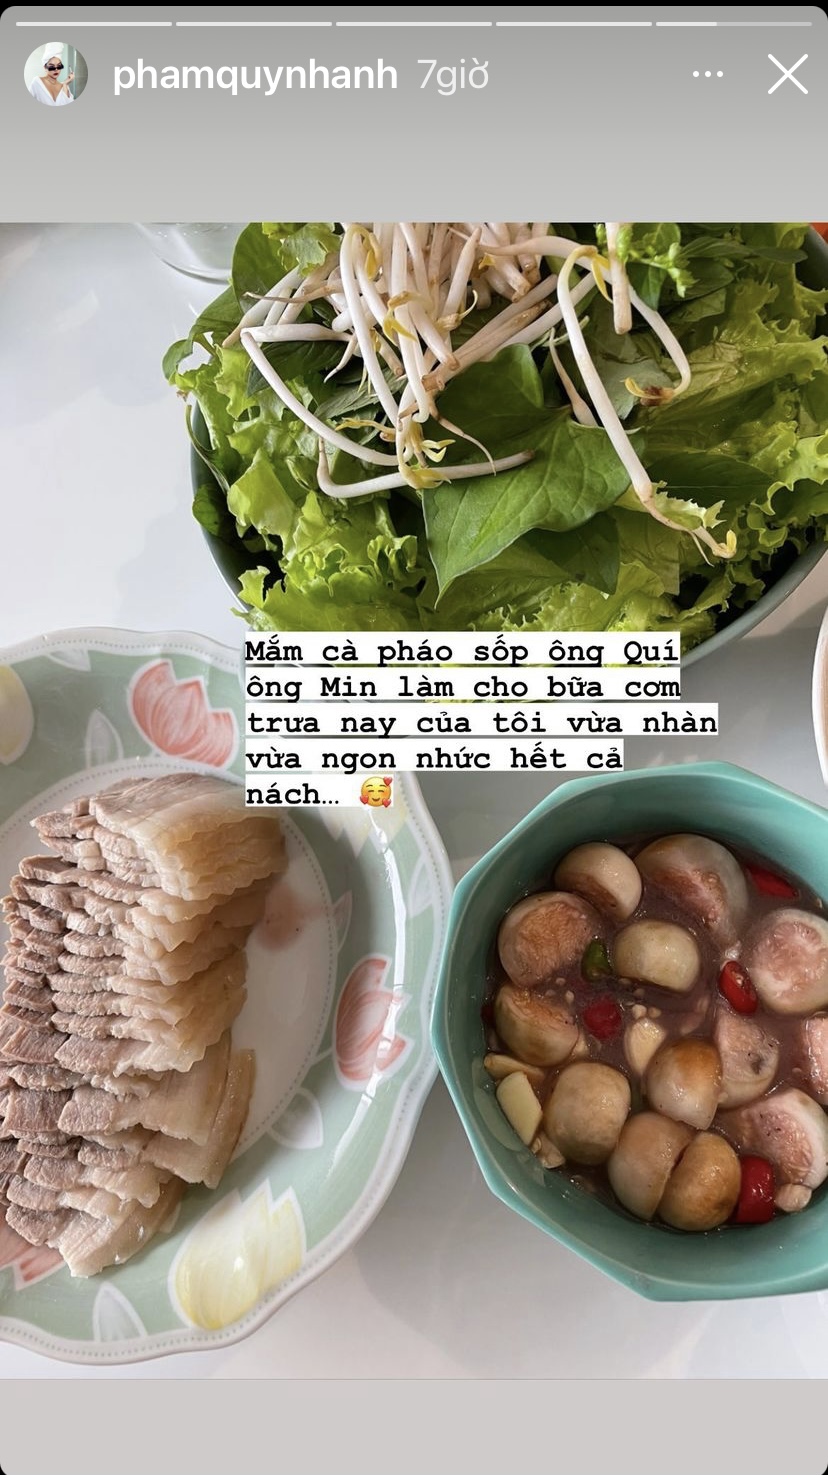 Thịt luộc ăn cùng mắm cà pháo và rau sống là những món ăn vừa nhanh vừa ngon nhức nách mà Phạm Quỳnh Anh chọn cho bữa trưa ngày thứ 5 nhà mình.